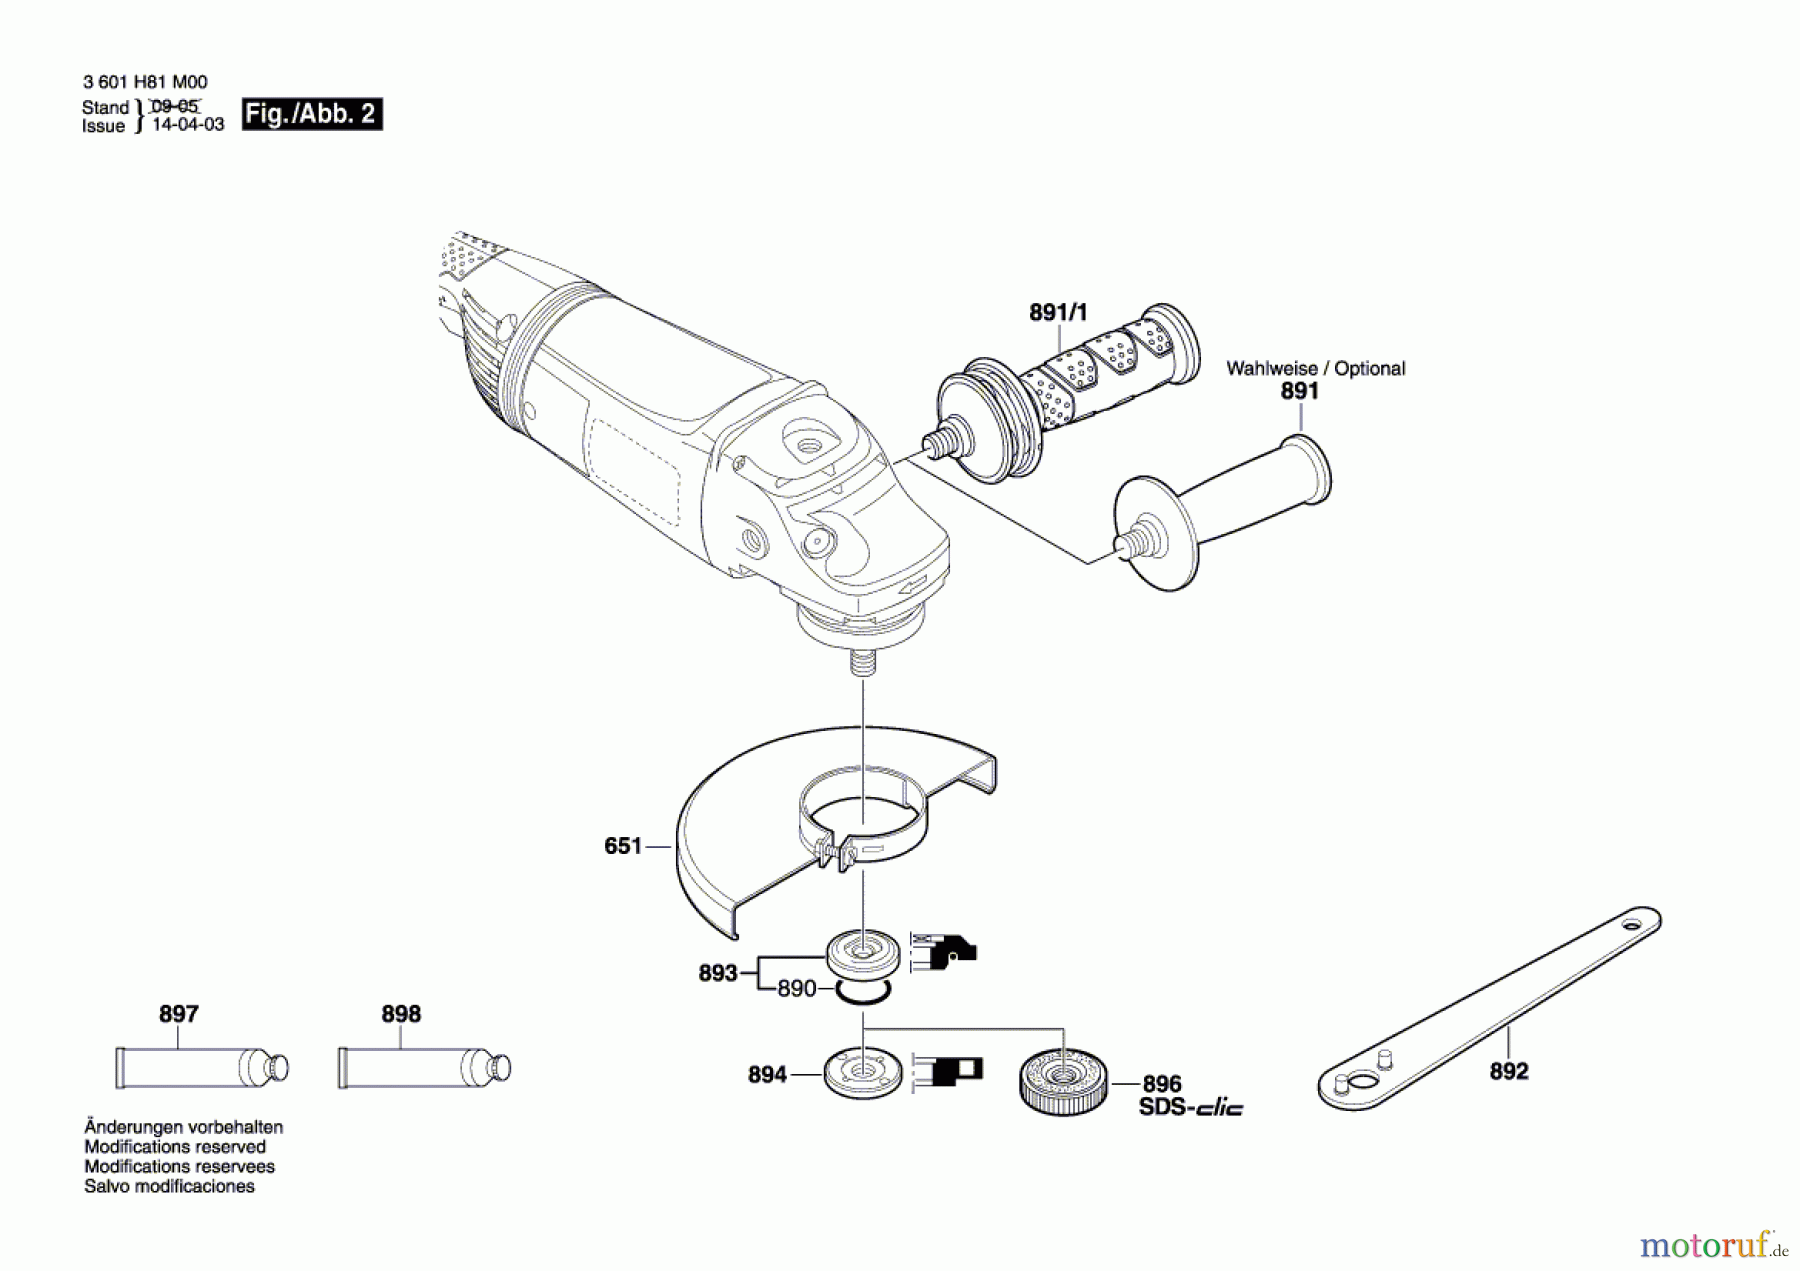  Bosch Werkzeug Winkelschleifer GWS 22-180 JH Seite 2